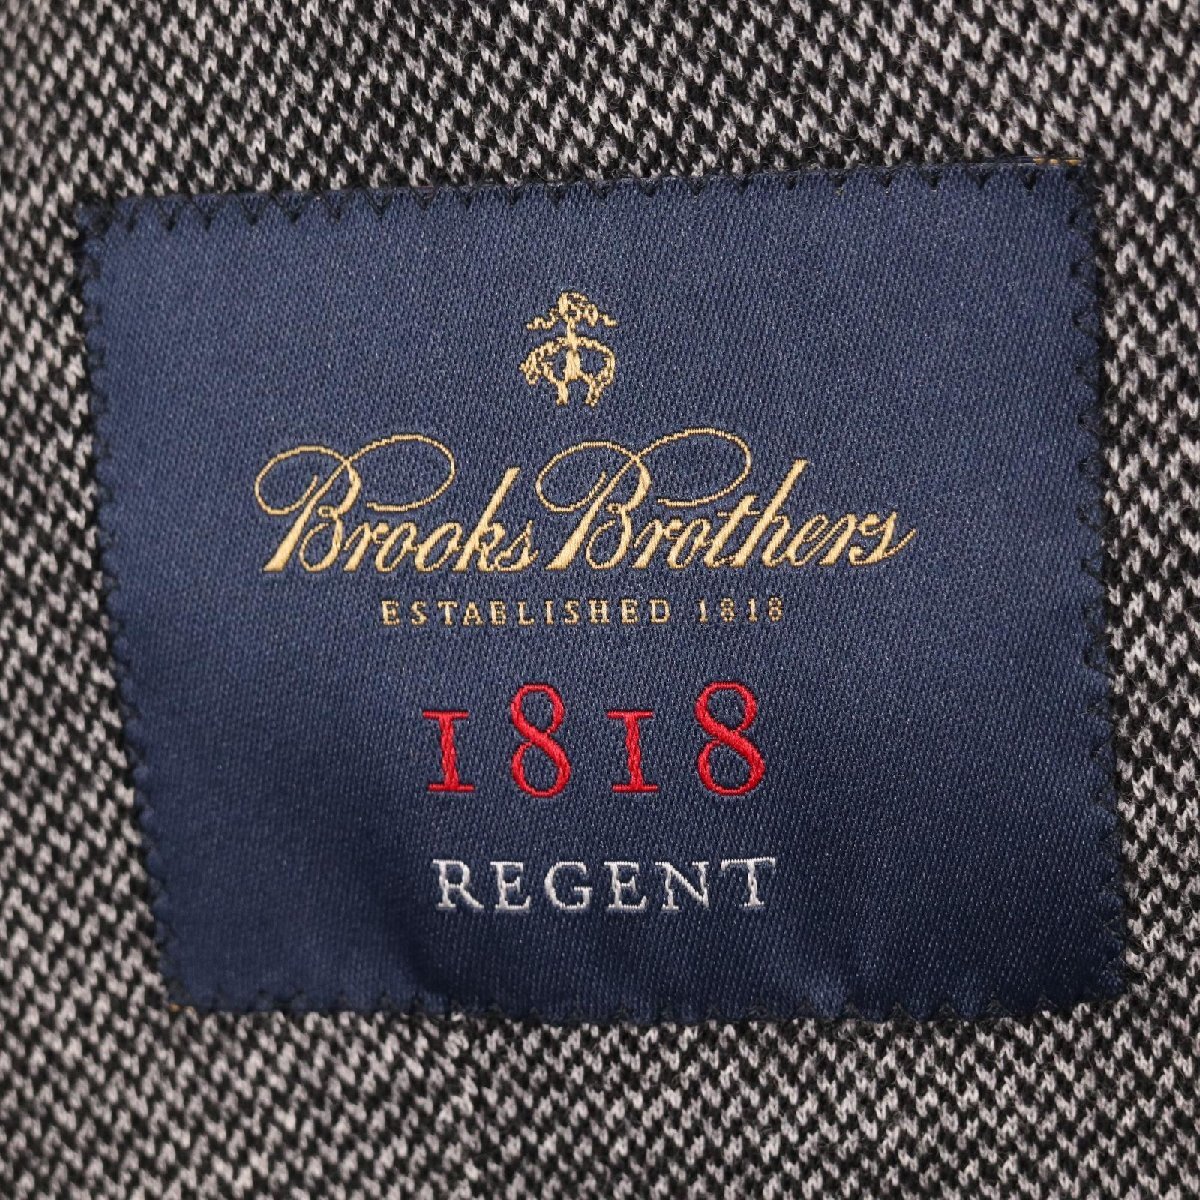 Brooks Brothers ブルックスブラザーズ 1818 REGENT DONDI JERSEY グレー 2Bジャケット グレー 36S ジャケット ウール メンズ 中古_画像8